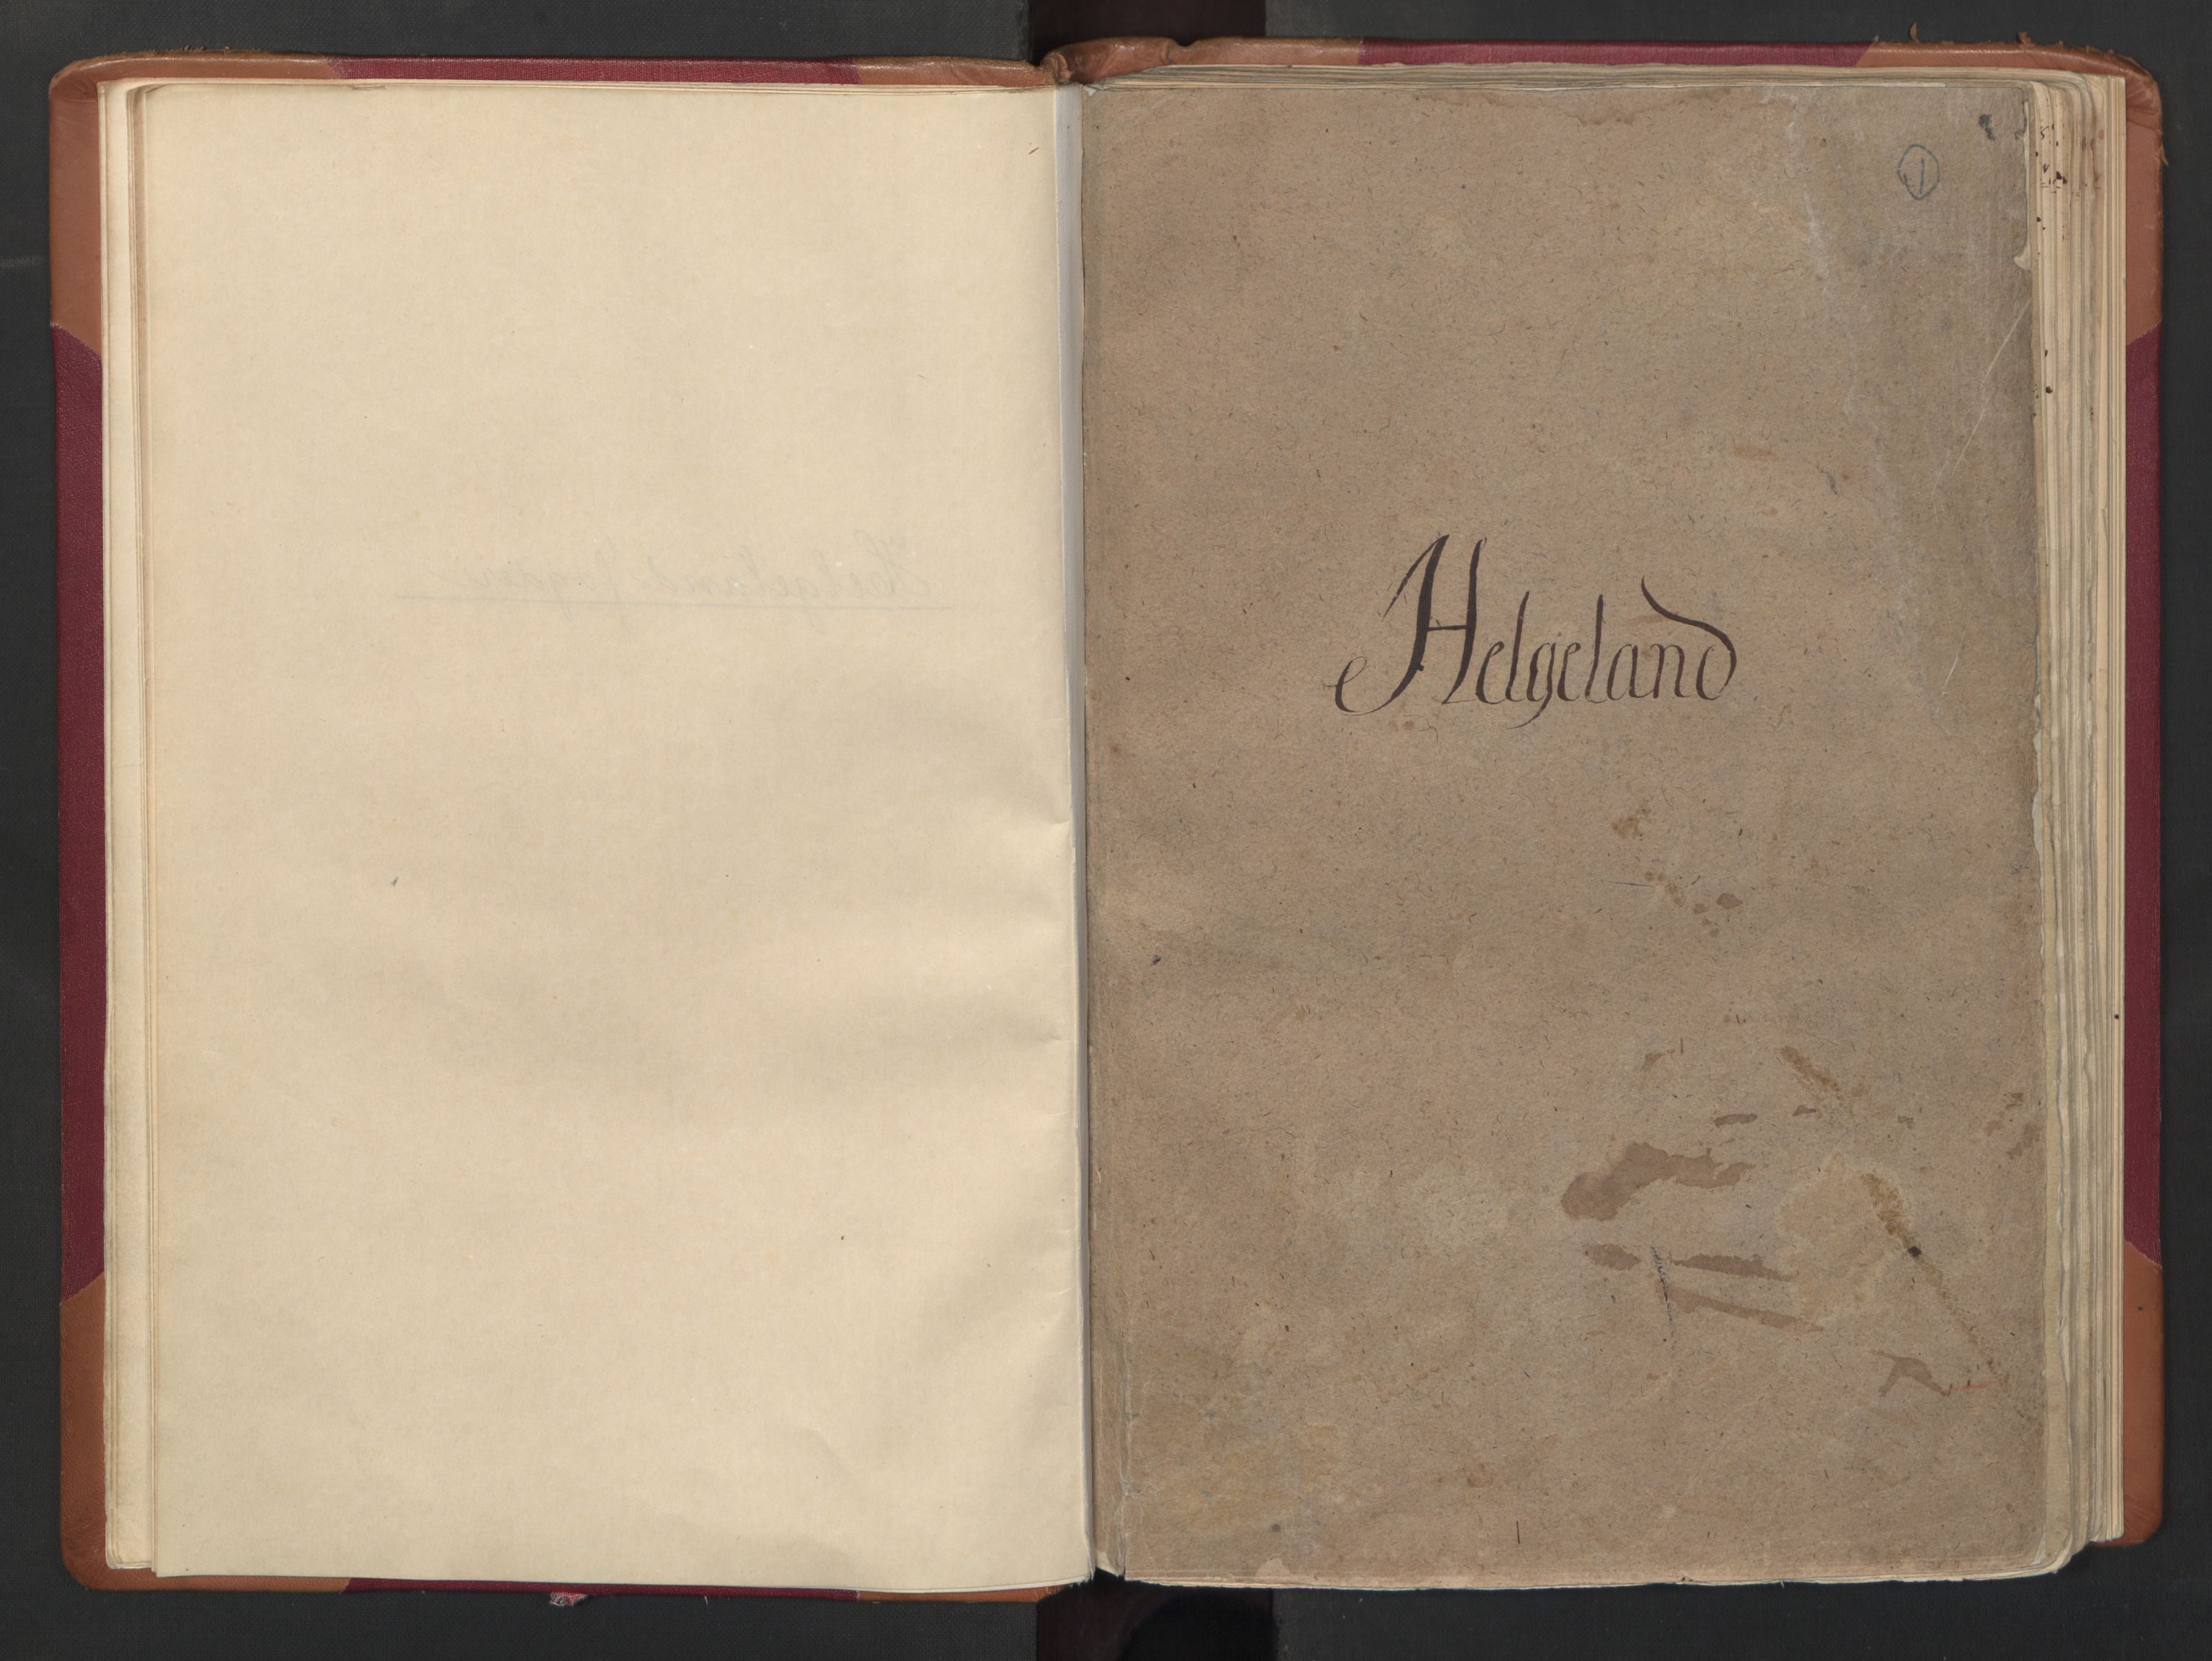 RA, Manntallet 1701, nr. 16: Helgeland fogderi, 1701, s. 1